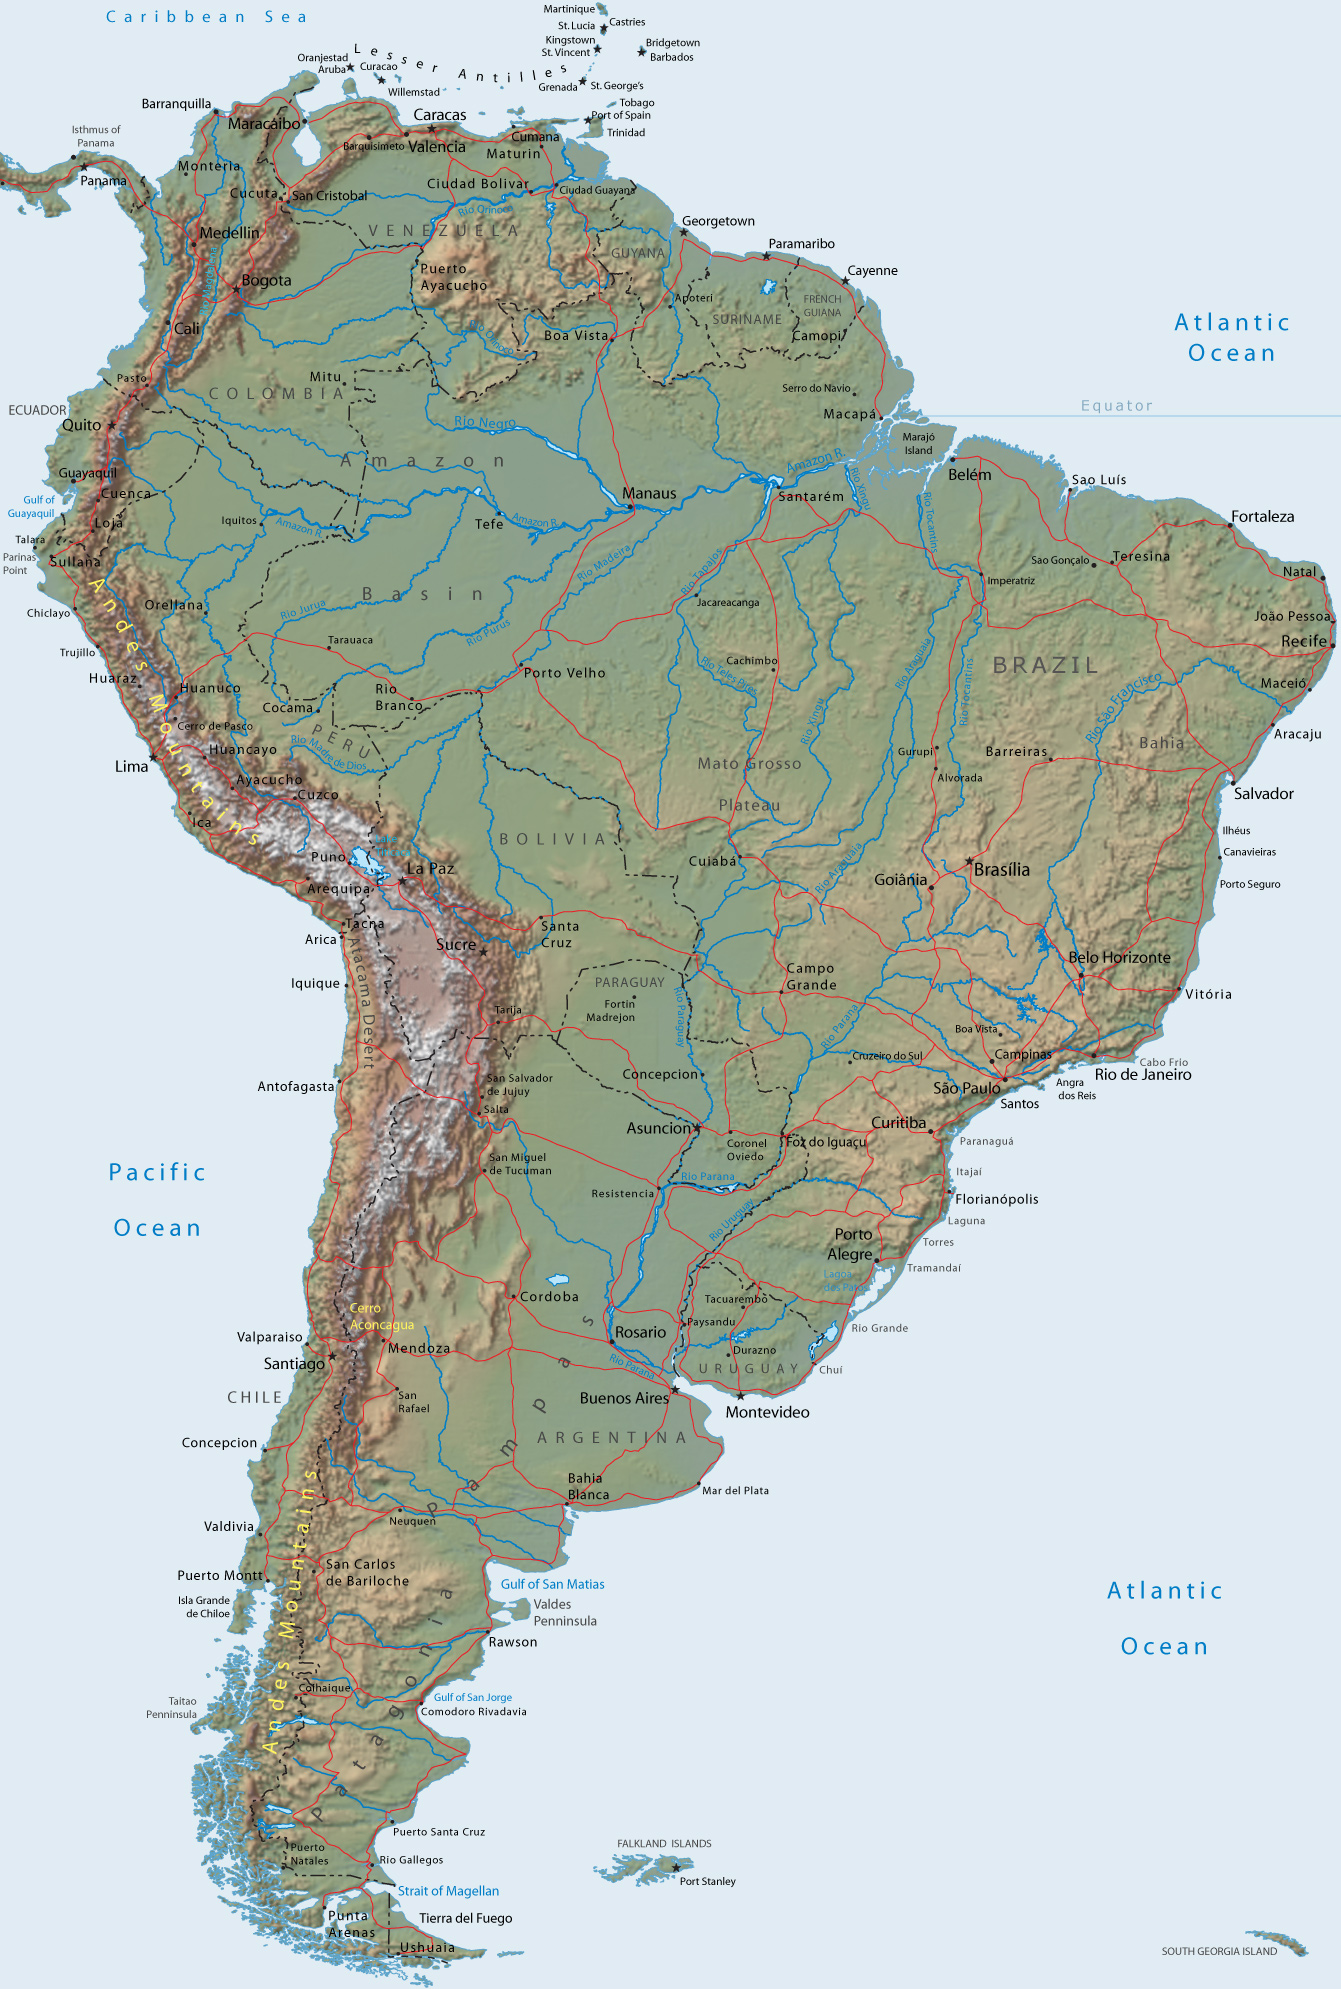 Mappa Geografica dell'America del Sud: mappa ad alta risoluzione